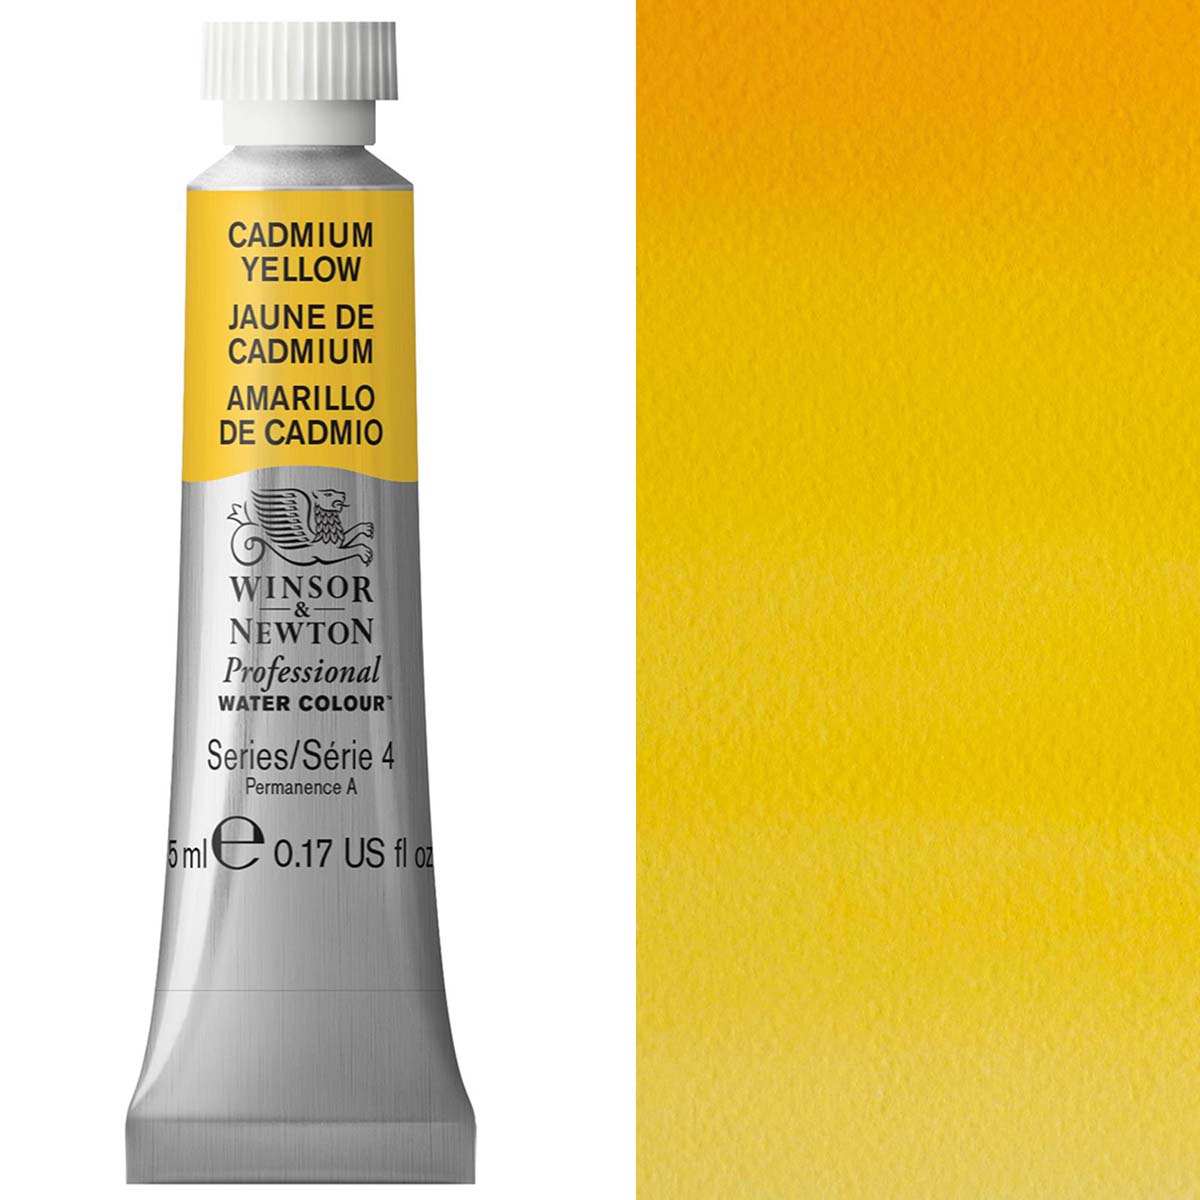 Winsor en Newton - aquarel van professionele artiesten - 5 ml - cadmium geel